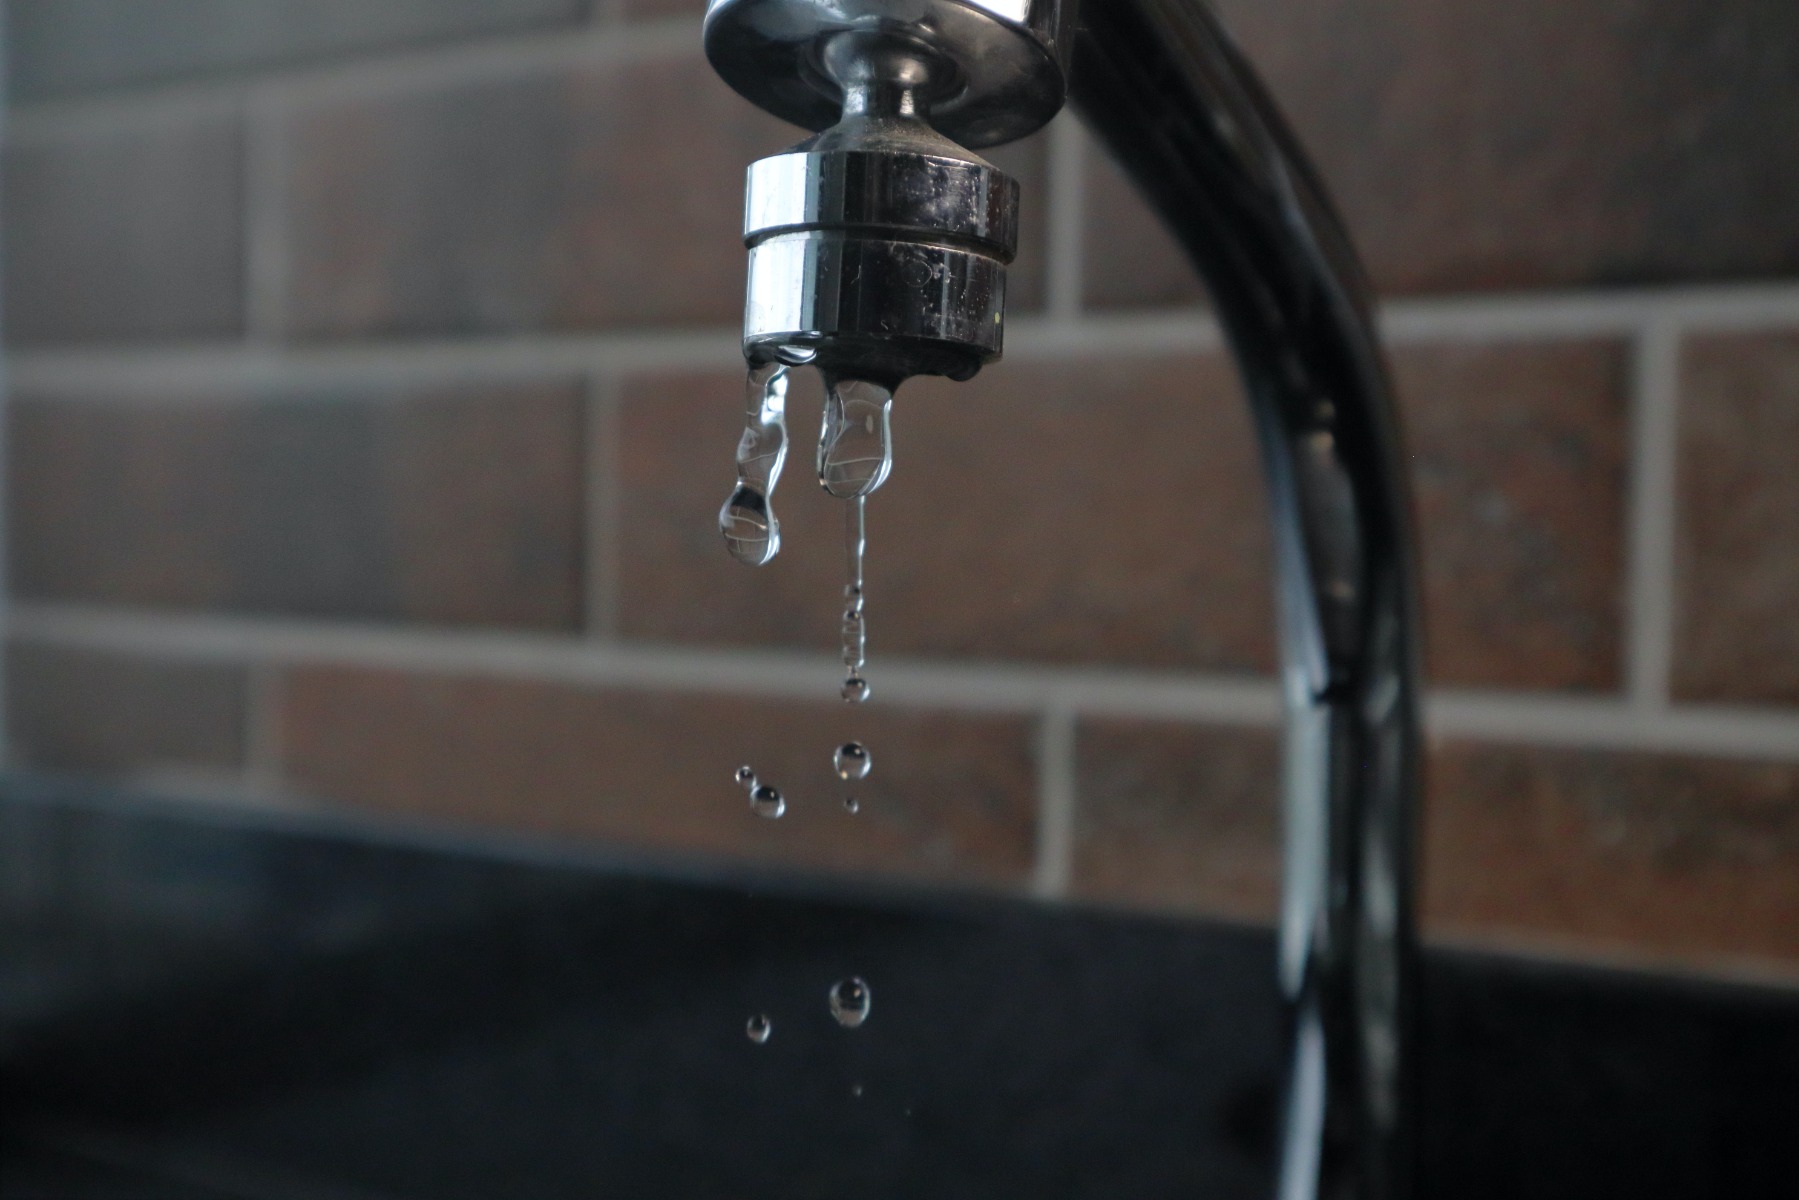 Metallic tap dripping water